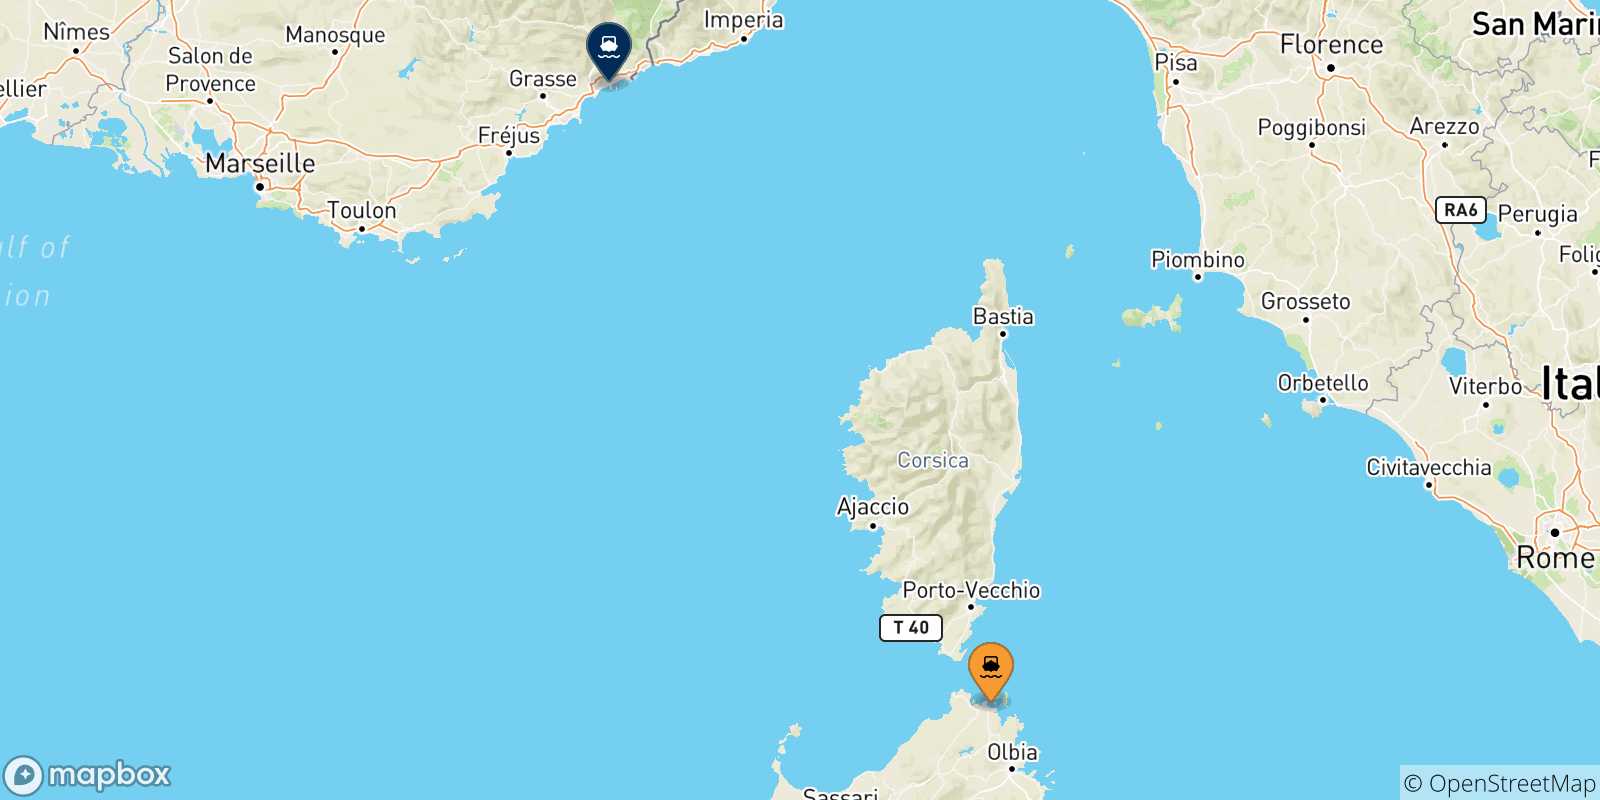 Mappa delle possibili rotte tra la Sardegna e Nizza